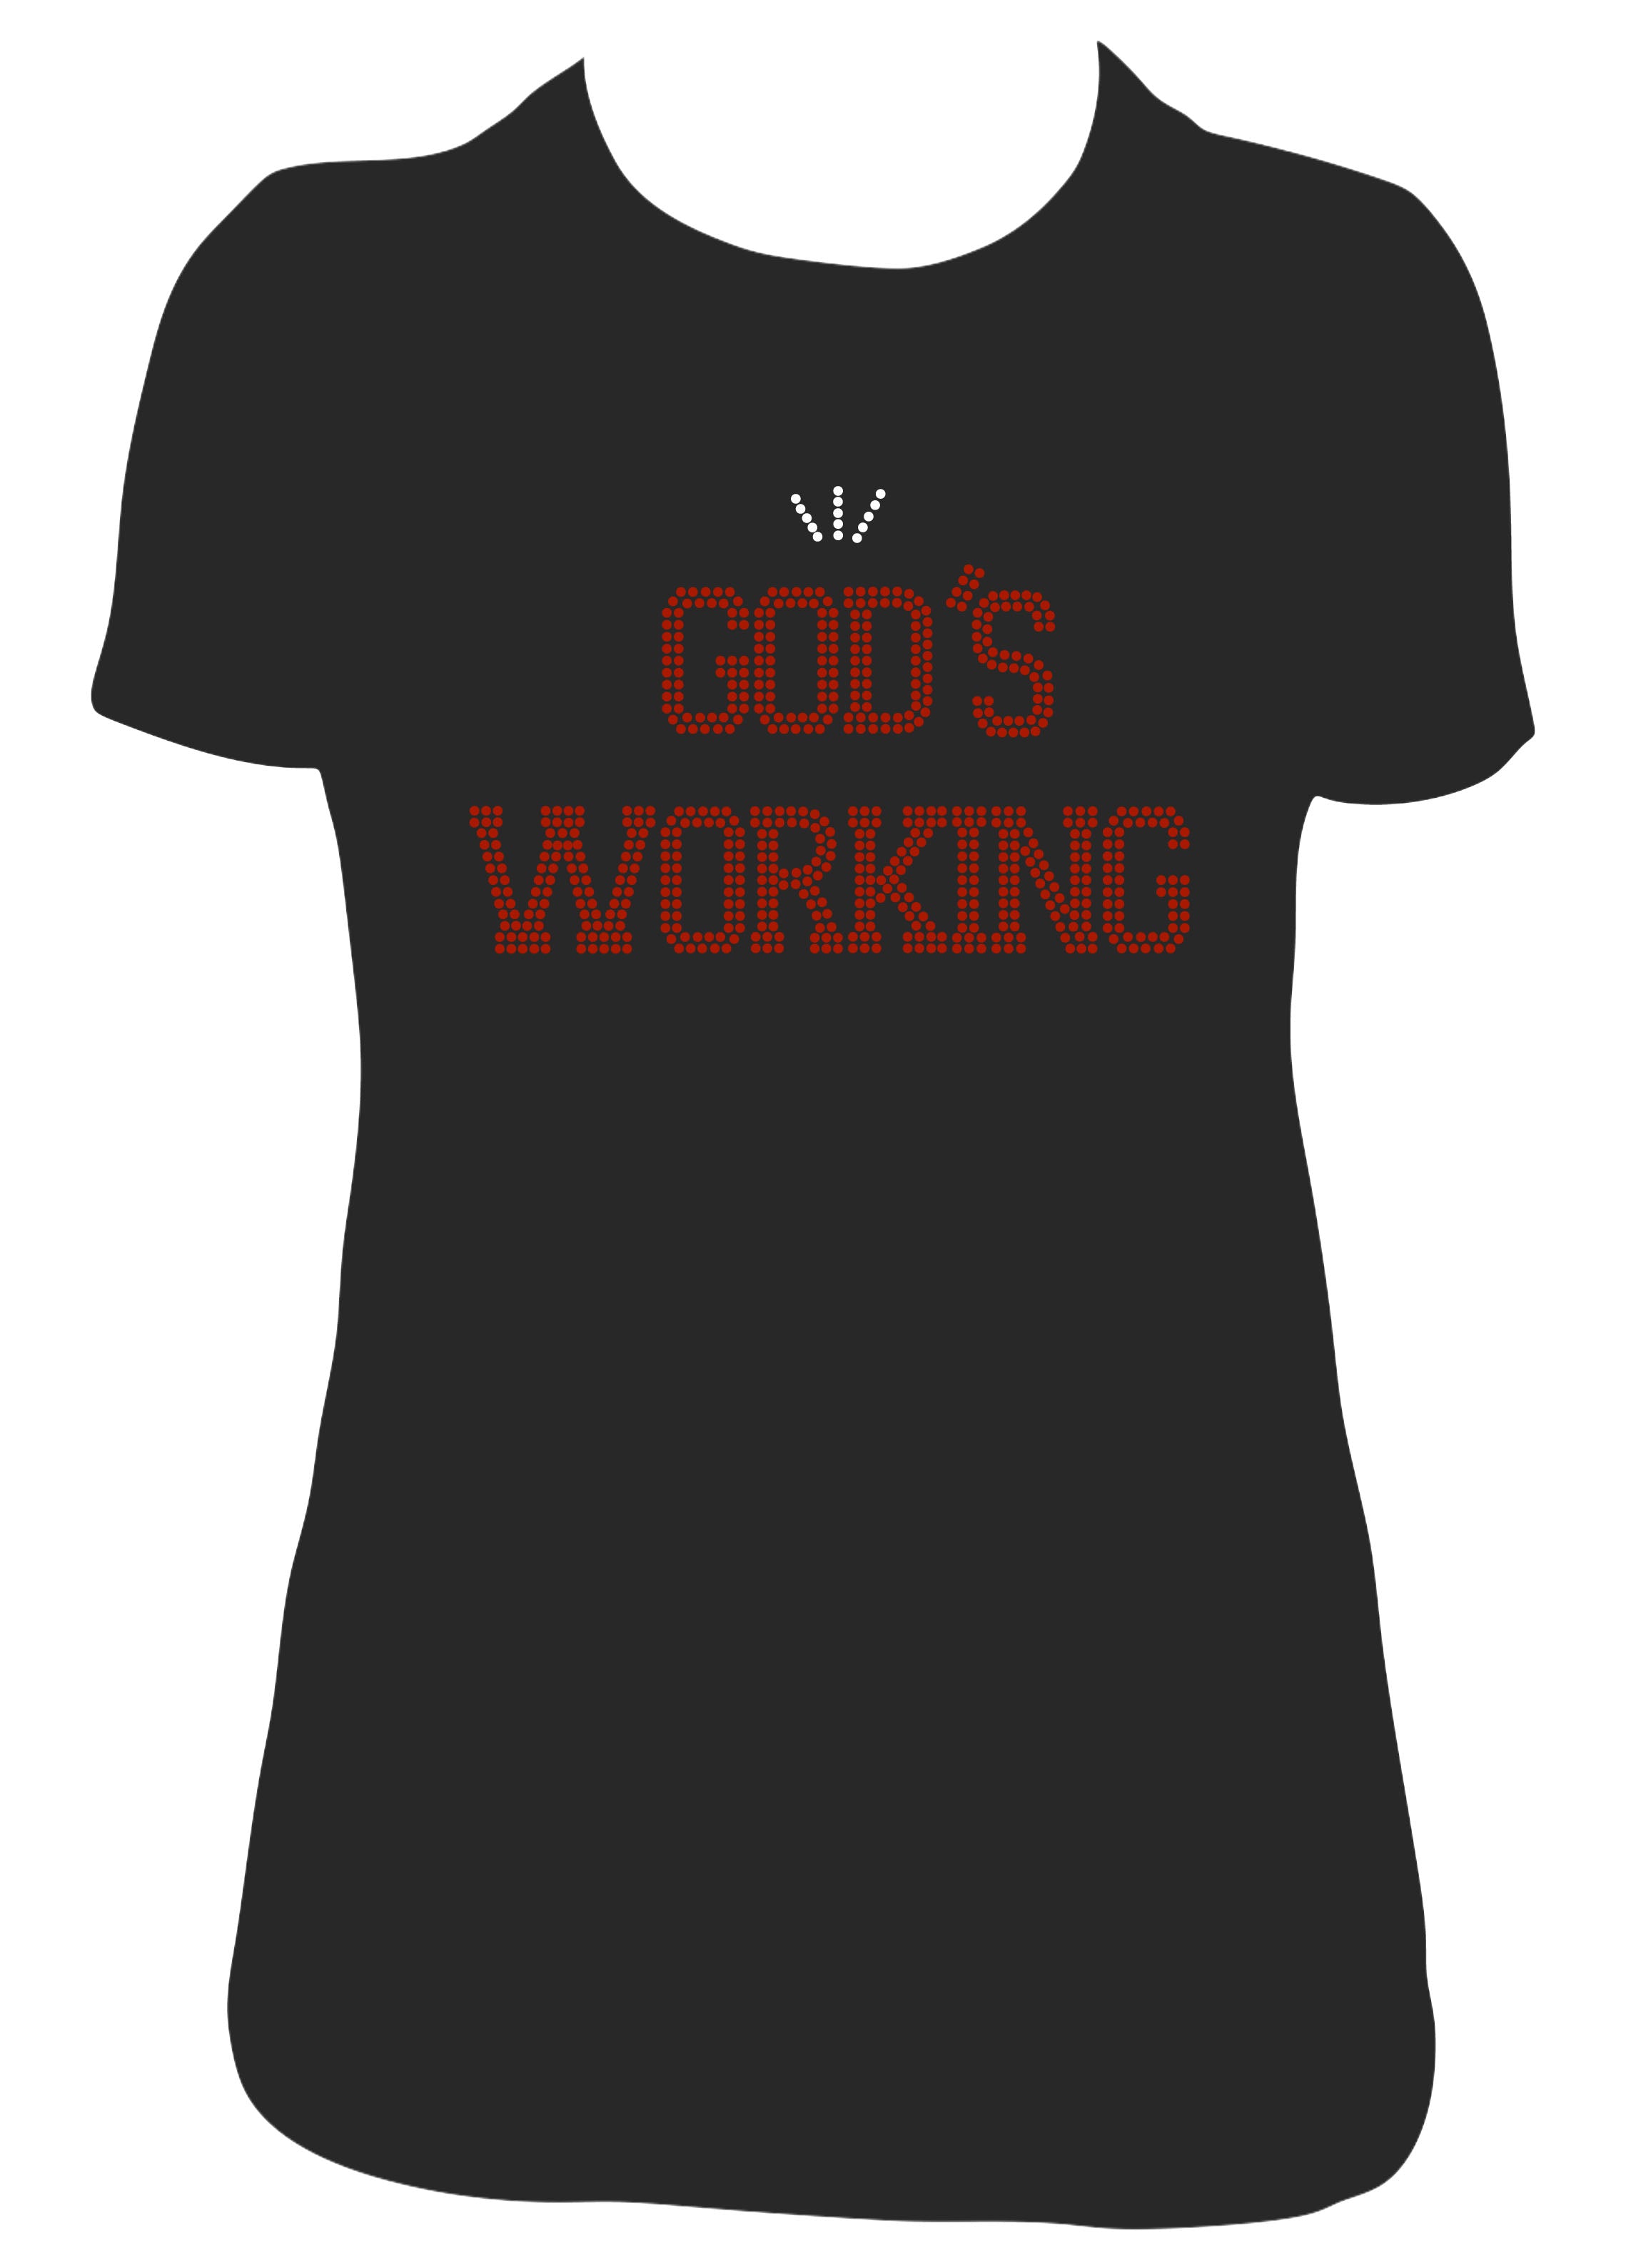 "God's Working" Tee in Rhinestone Bling